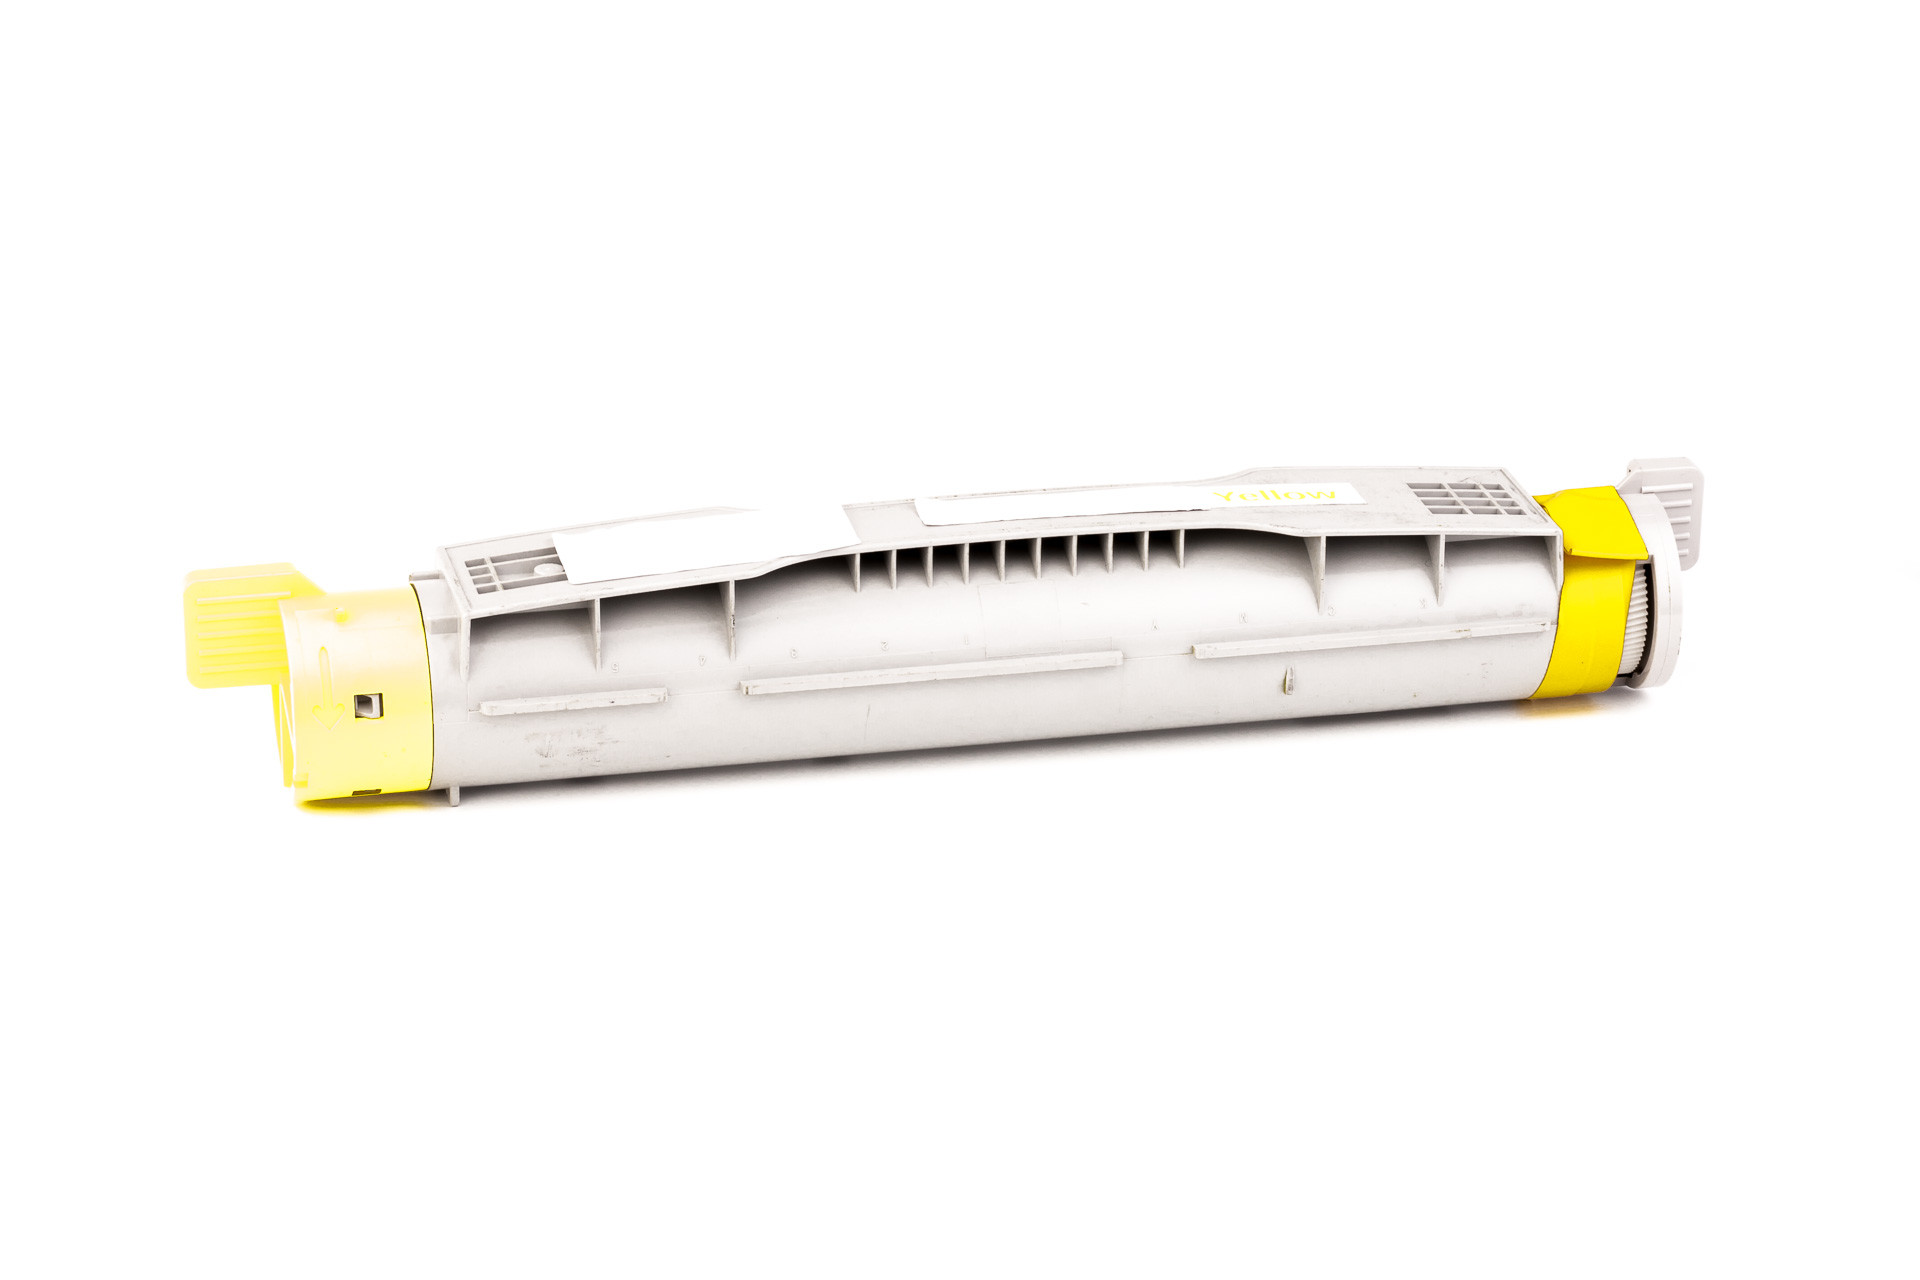 Cartucho de toner (alternativo) compatible a Epson C13S050088/C 13 S0 50088 - 0088 - Aculaser C 4000 amarillo